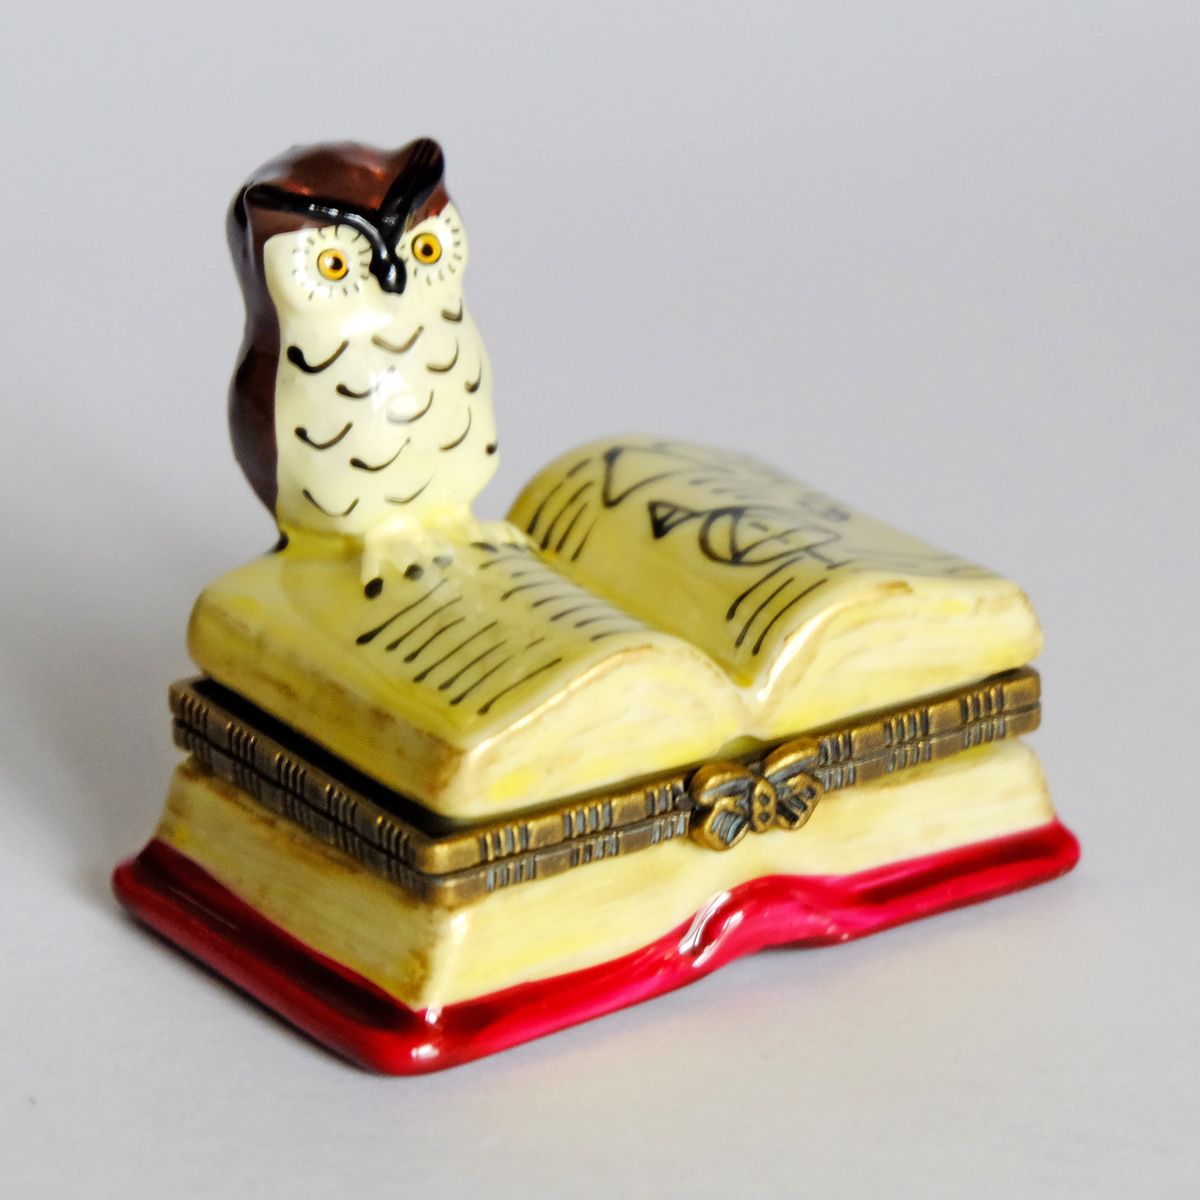 新品 ポタリーミニケース 陶器製小物入れ「ふくろう博士」Pottery Mini Case "Owl & Book"_画像1